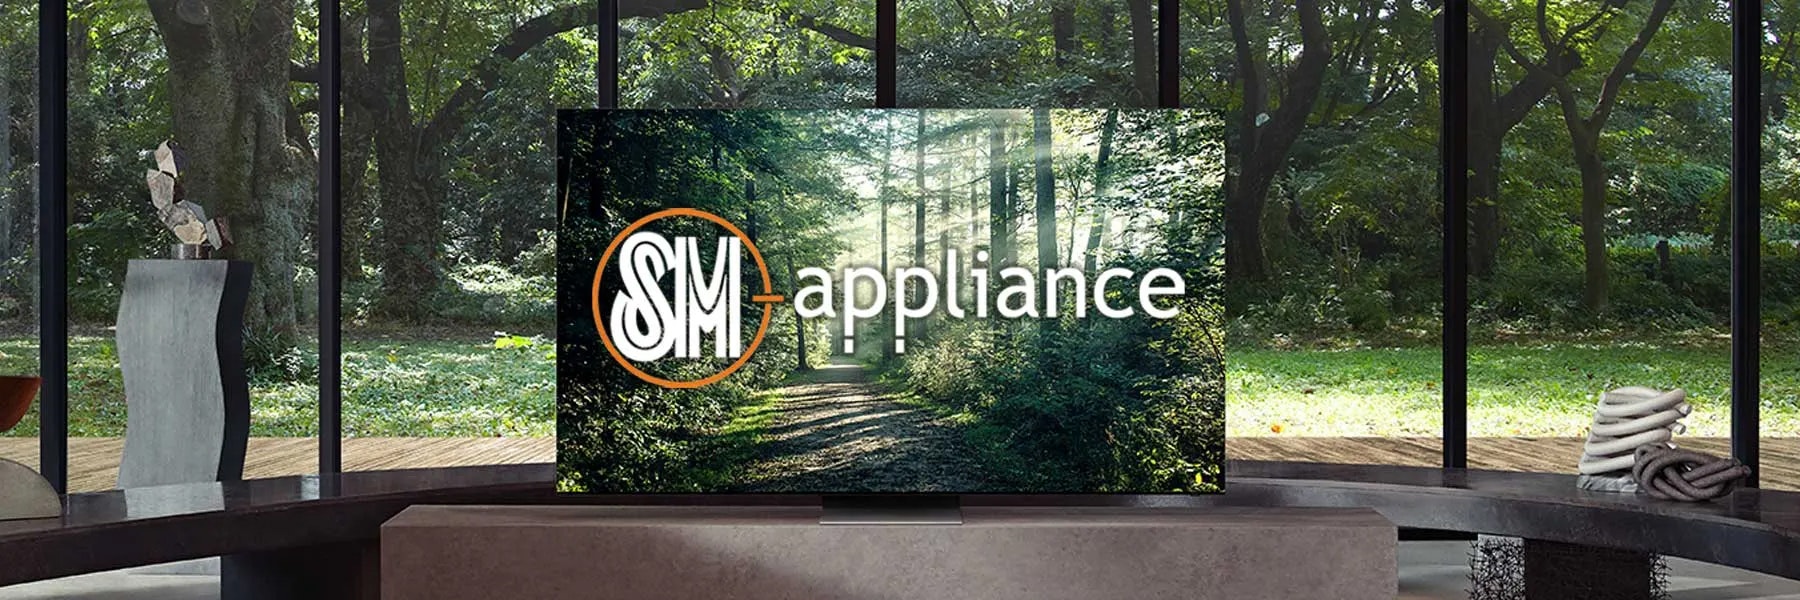 bannerlist-SM Appliance